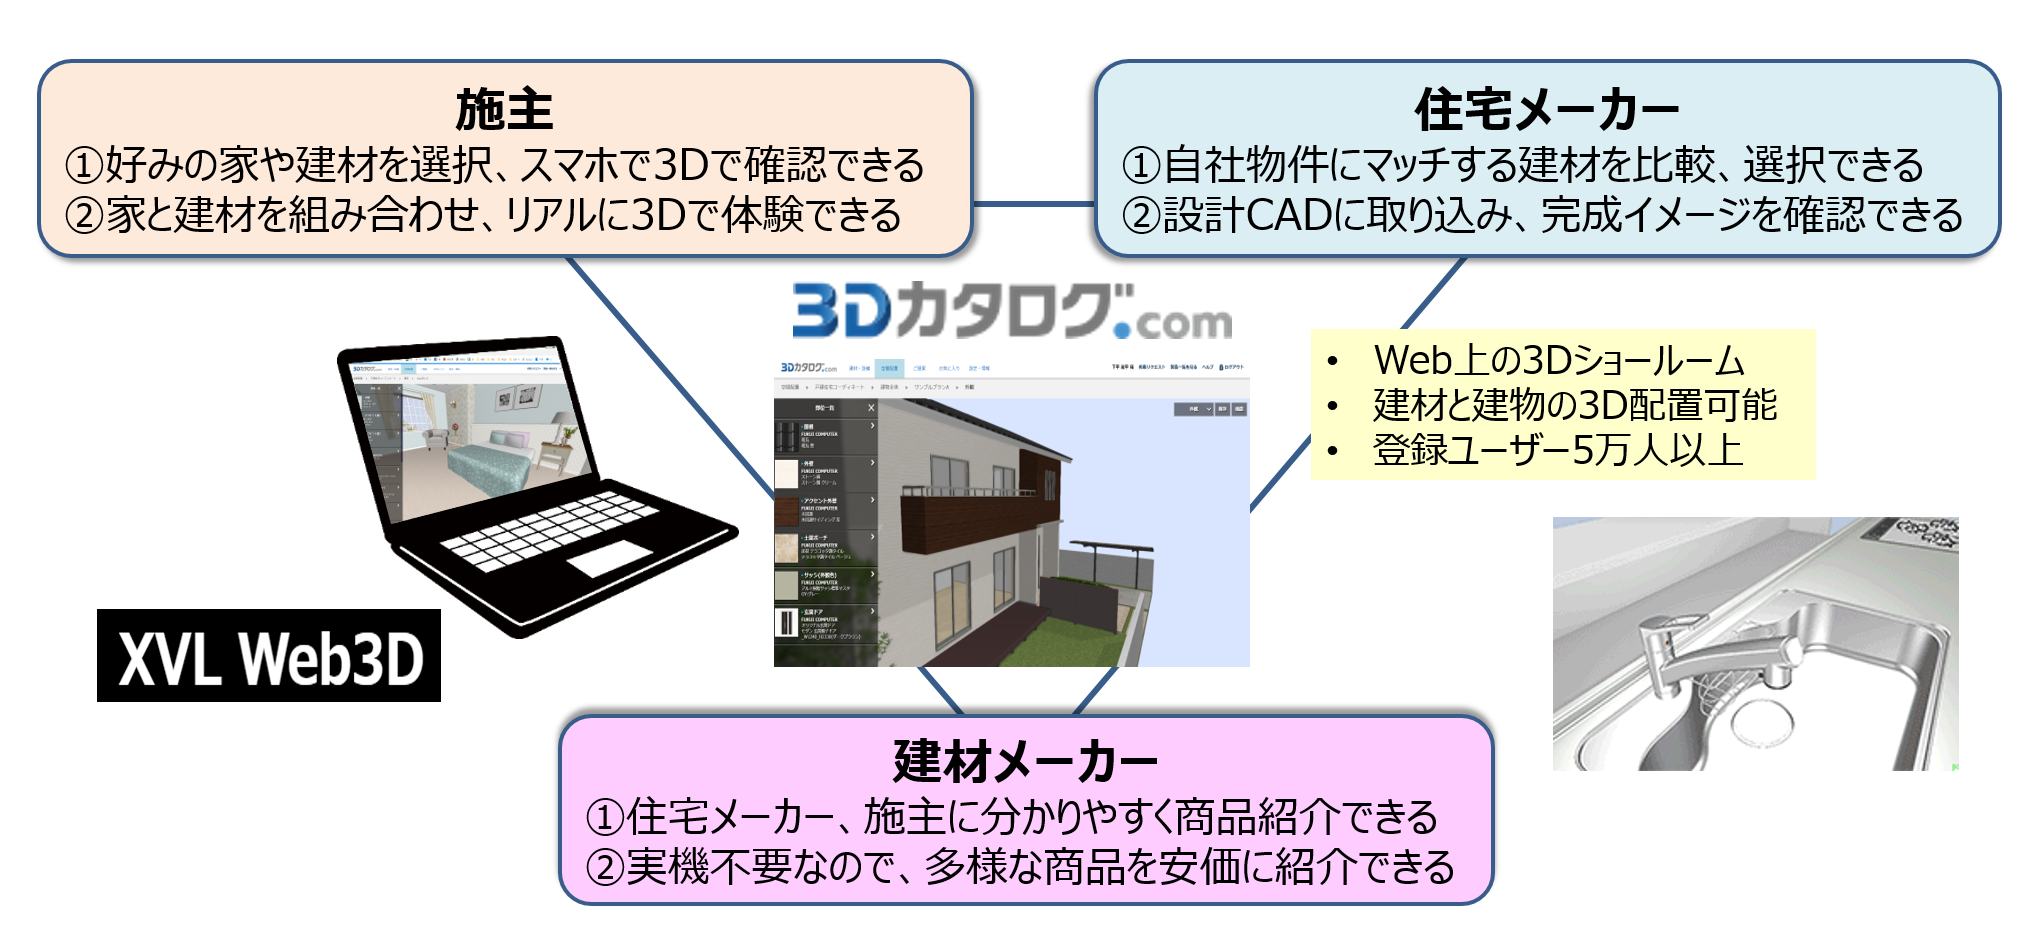 福井コンピュータアーキテクトの 3D カタログ.com